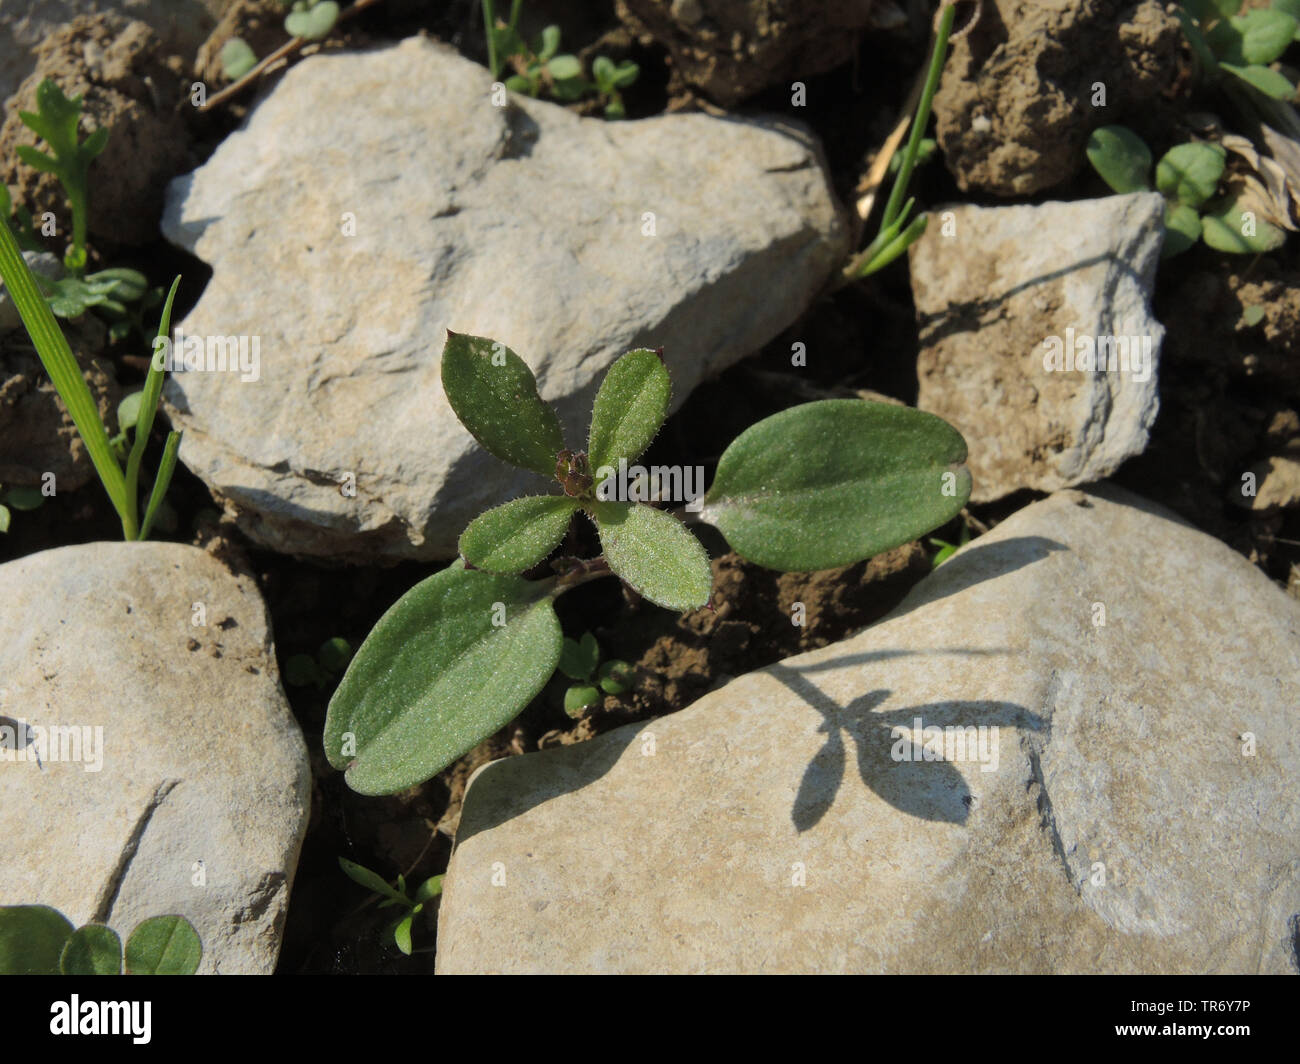 Gaillet, éleusine, Catchweed le gaillet (Galium aparine), plantule, Allemagne, Rhénanie du Nord-Westphalie Banque D'Images